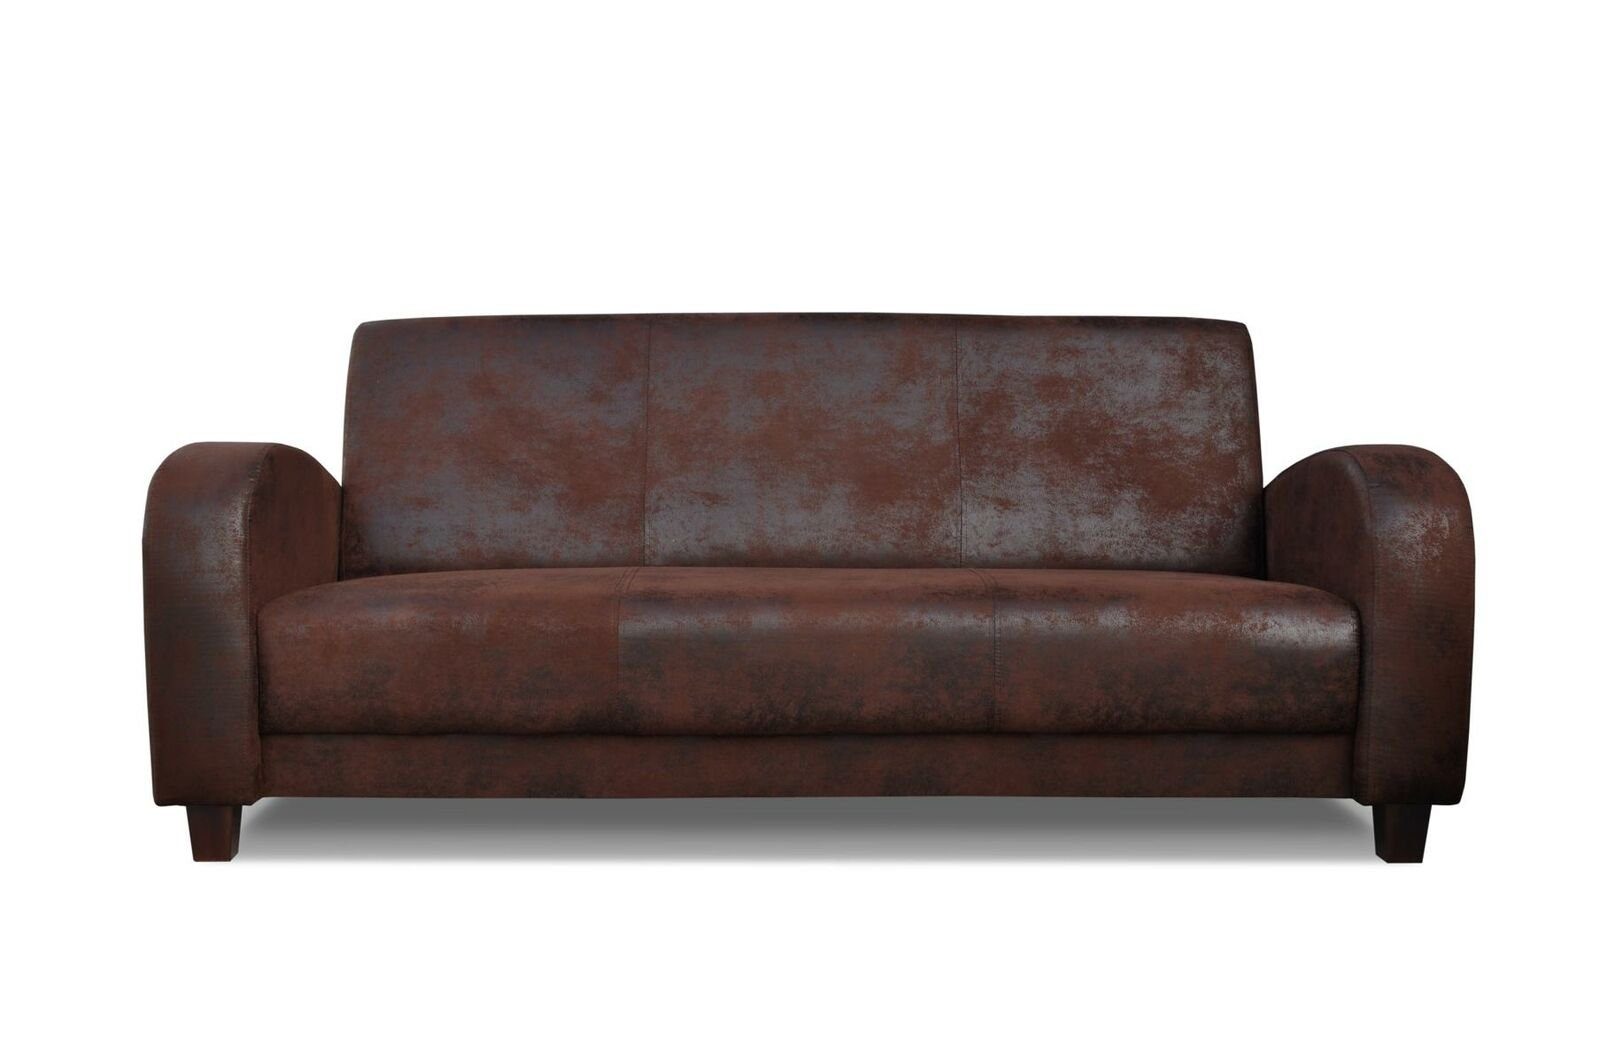 JVmoebel Sofa Vintages Ledersofa Set 3+2+1 Sitzer Set Polstermöbel Couch Neu, Made in Europe